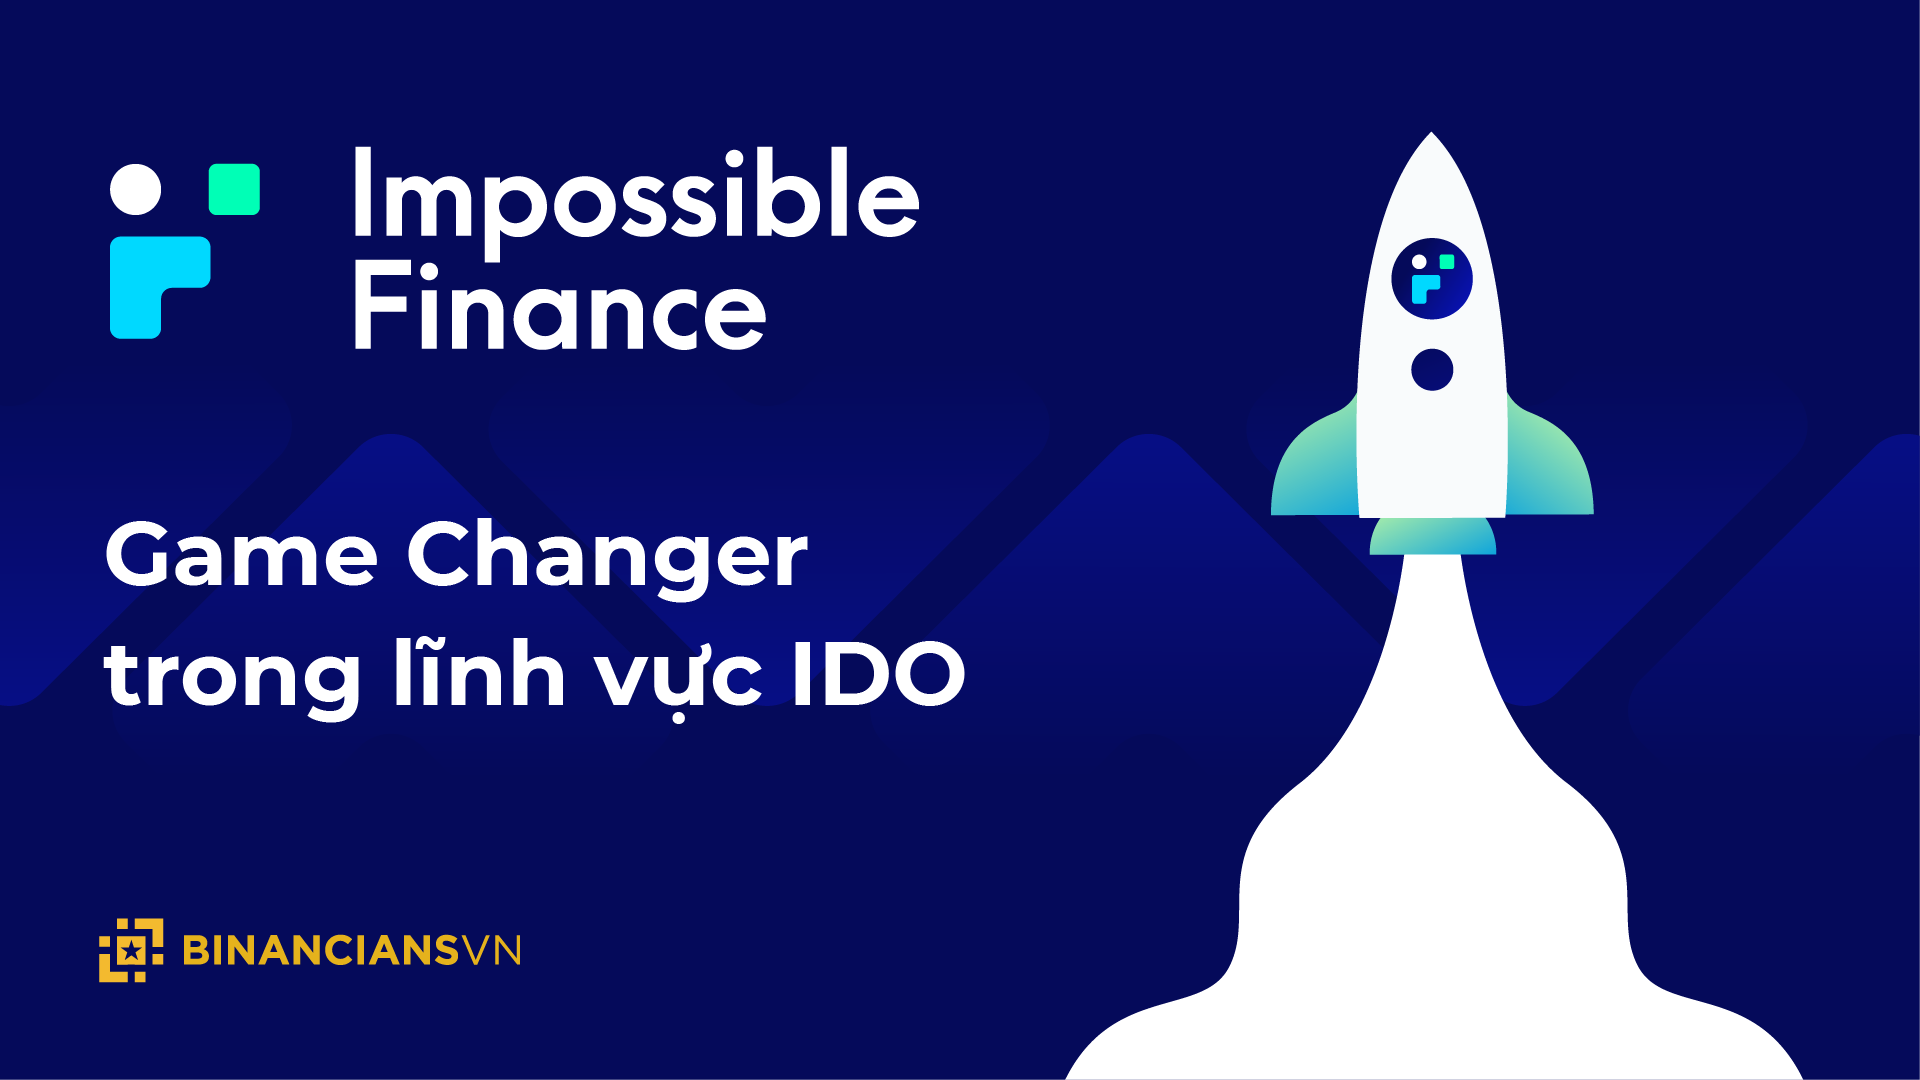 Tổng quan Impossible Finance - Game Changer trong lĩnh vực IDO